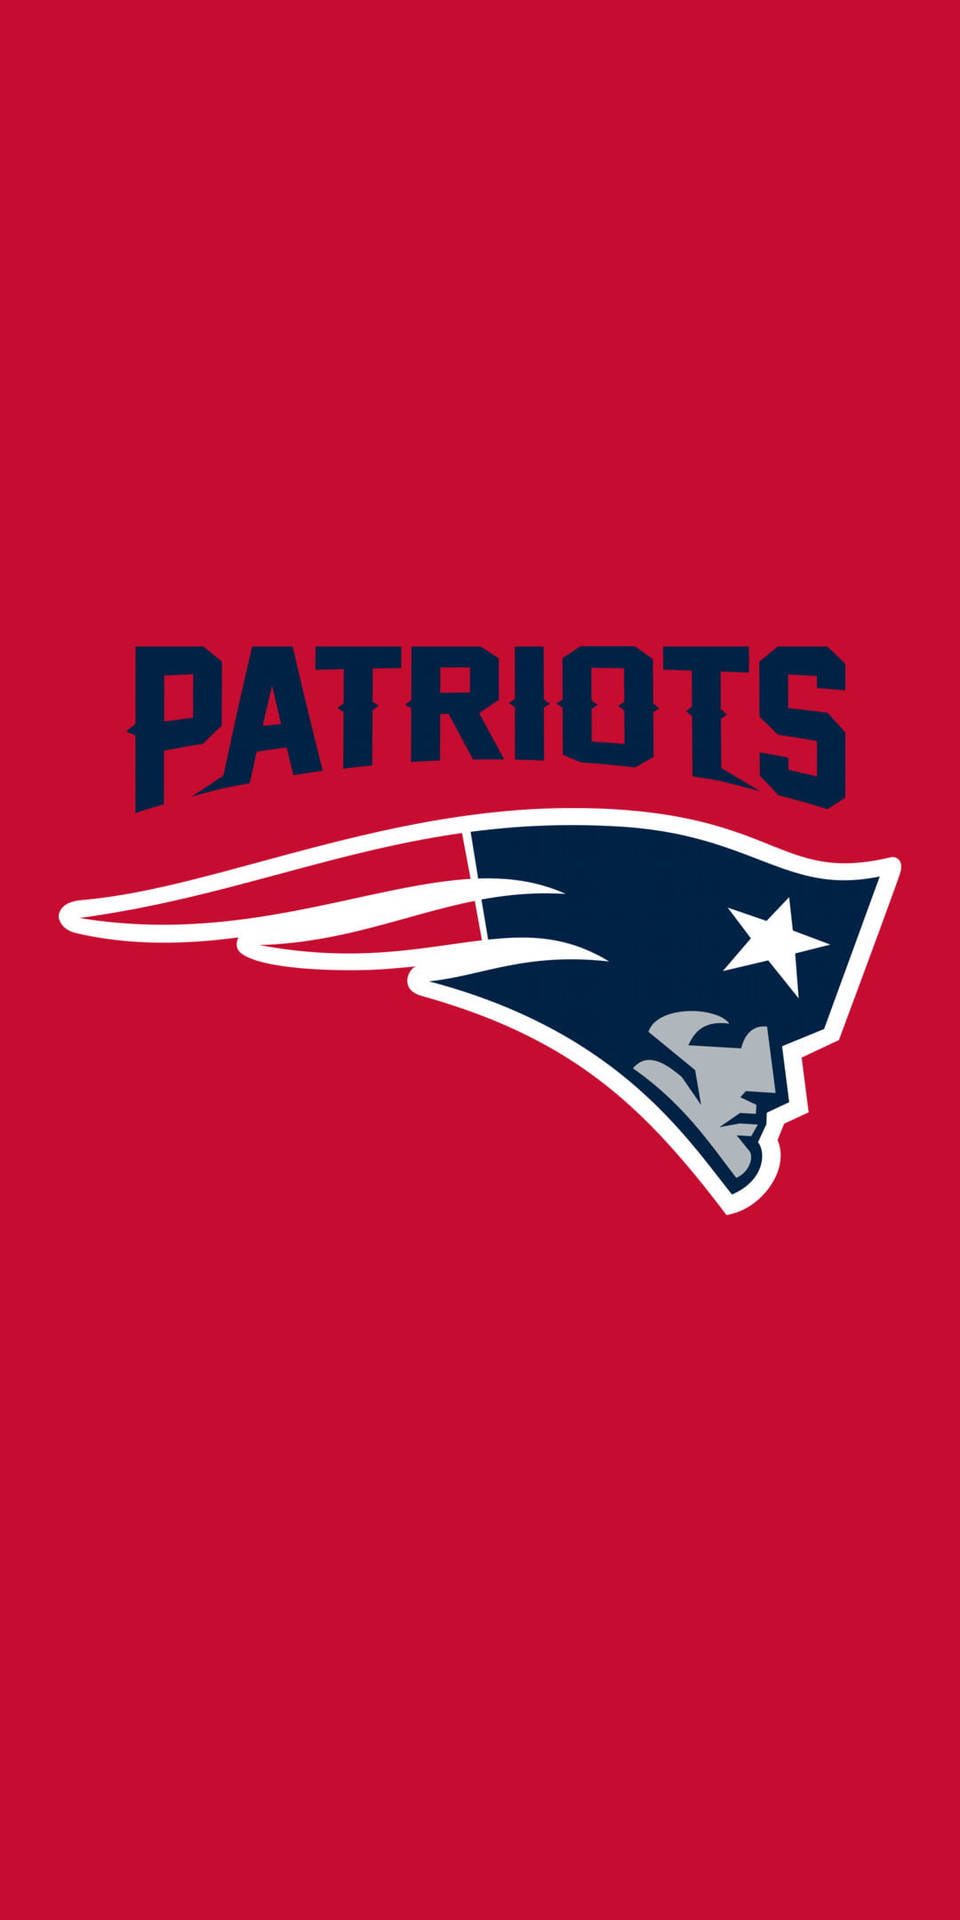 Patriots NFL Team Logo Wallpaper